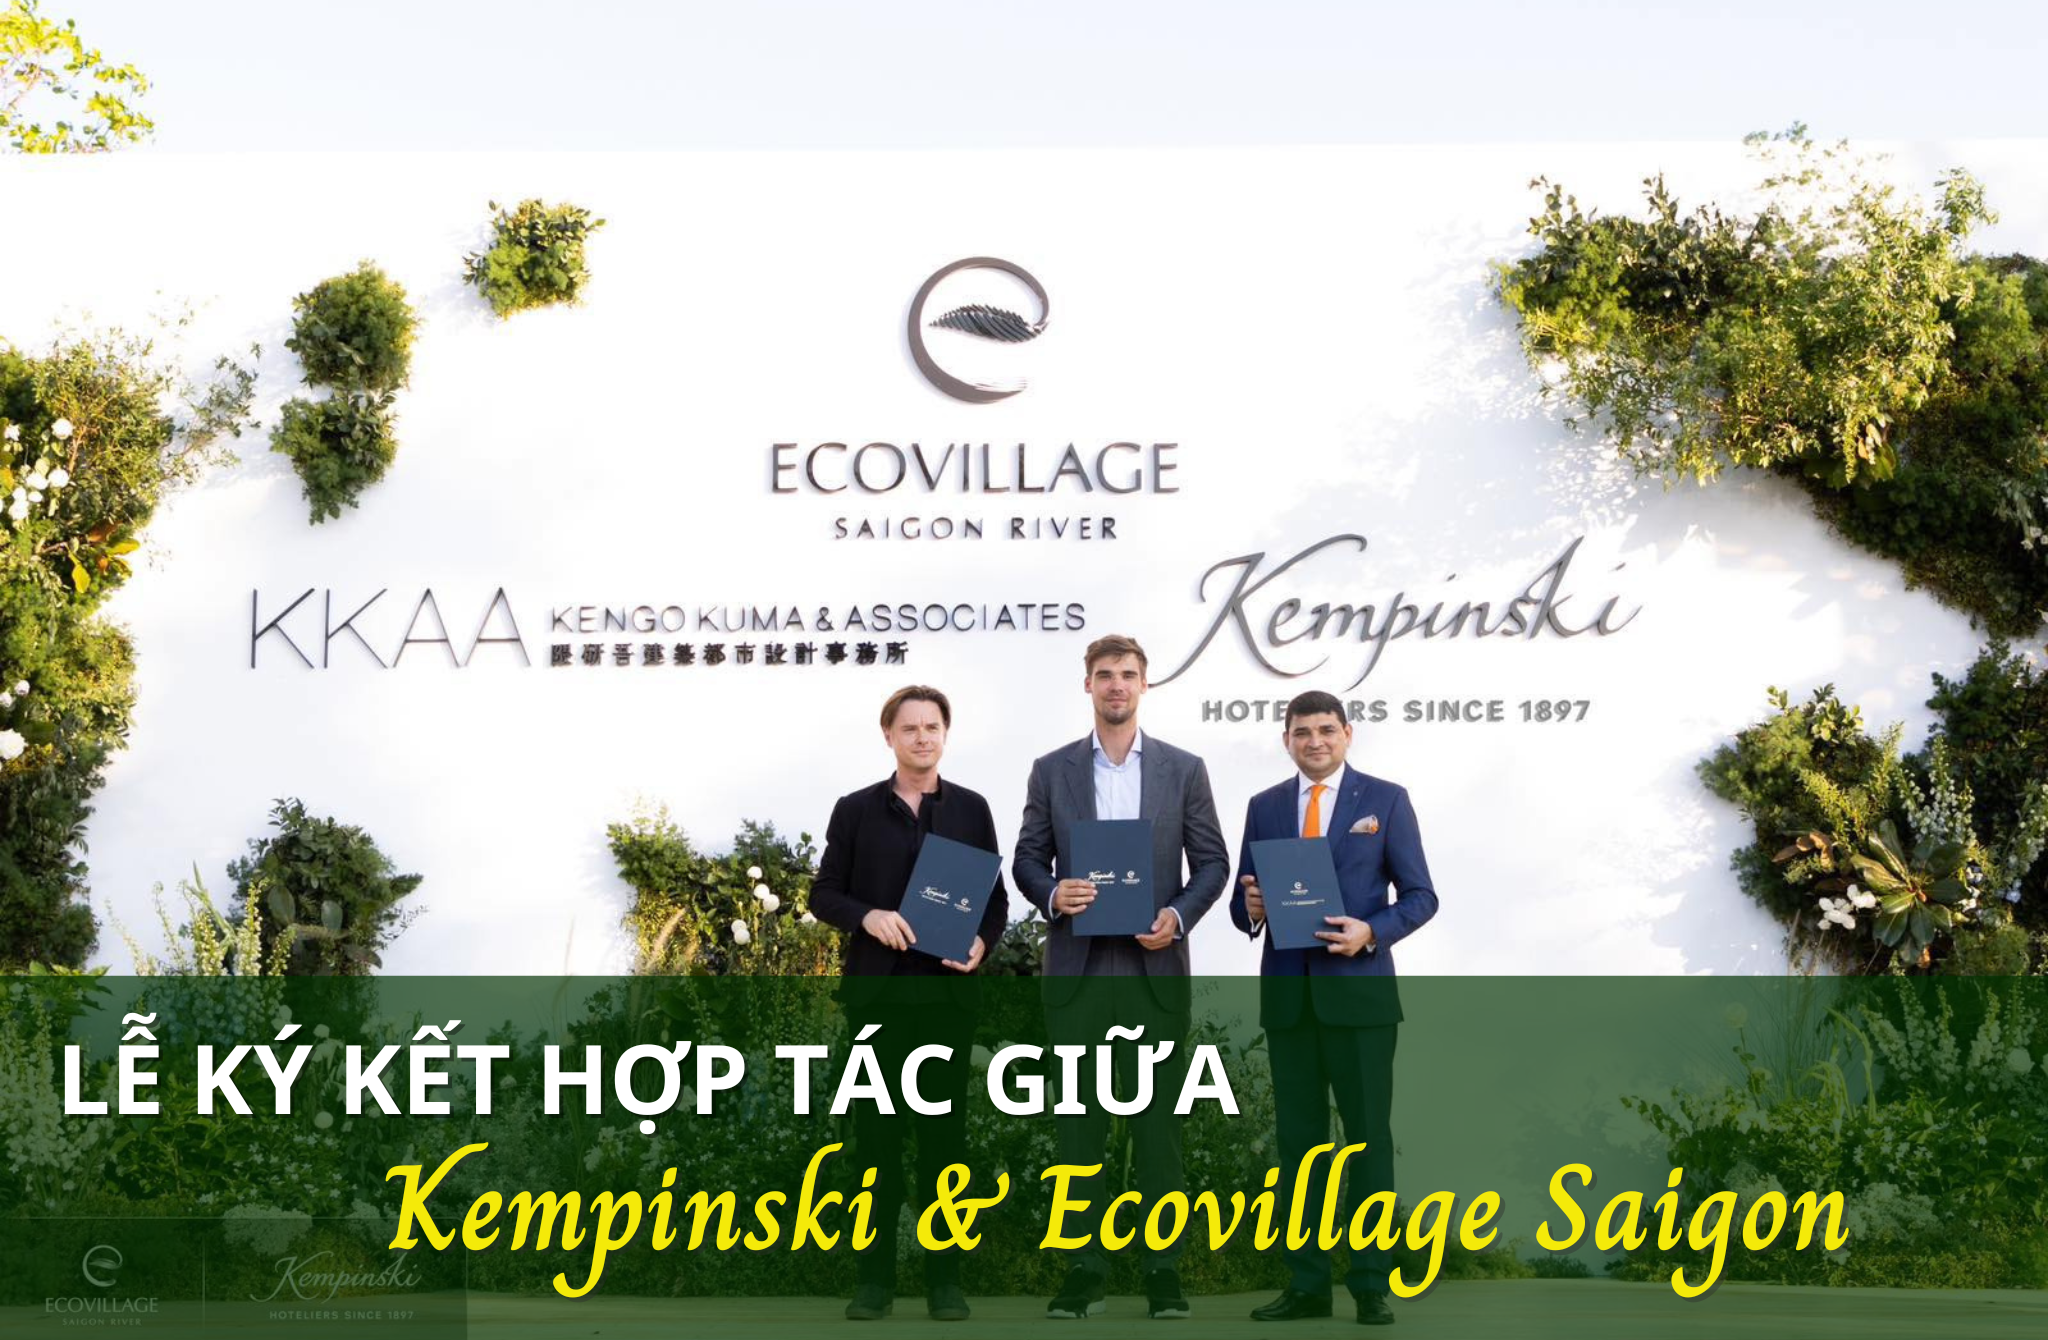 Lễ ký kết hợp tác giữa Kempinski Hotel và Ecovillage Saigon River